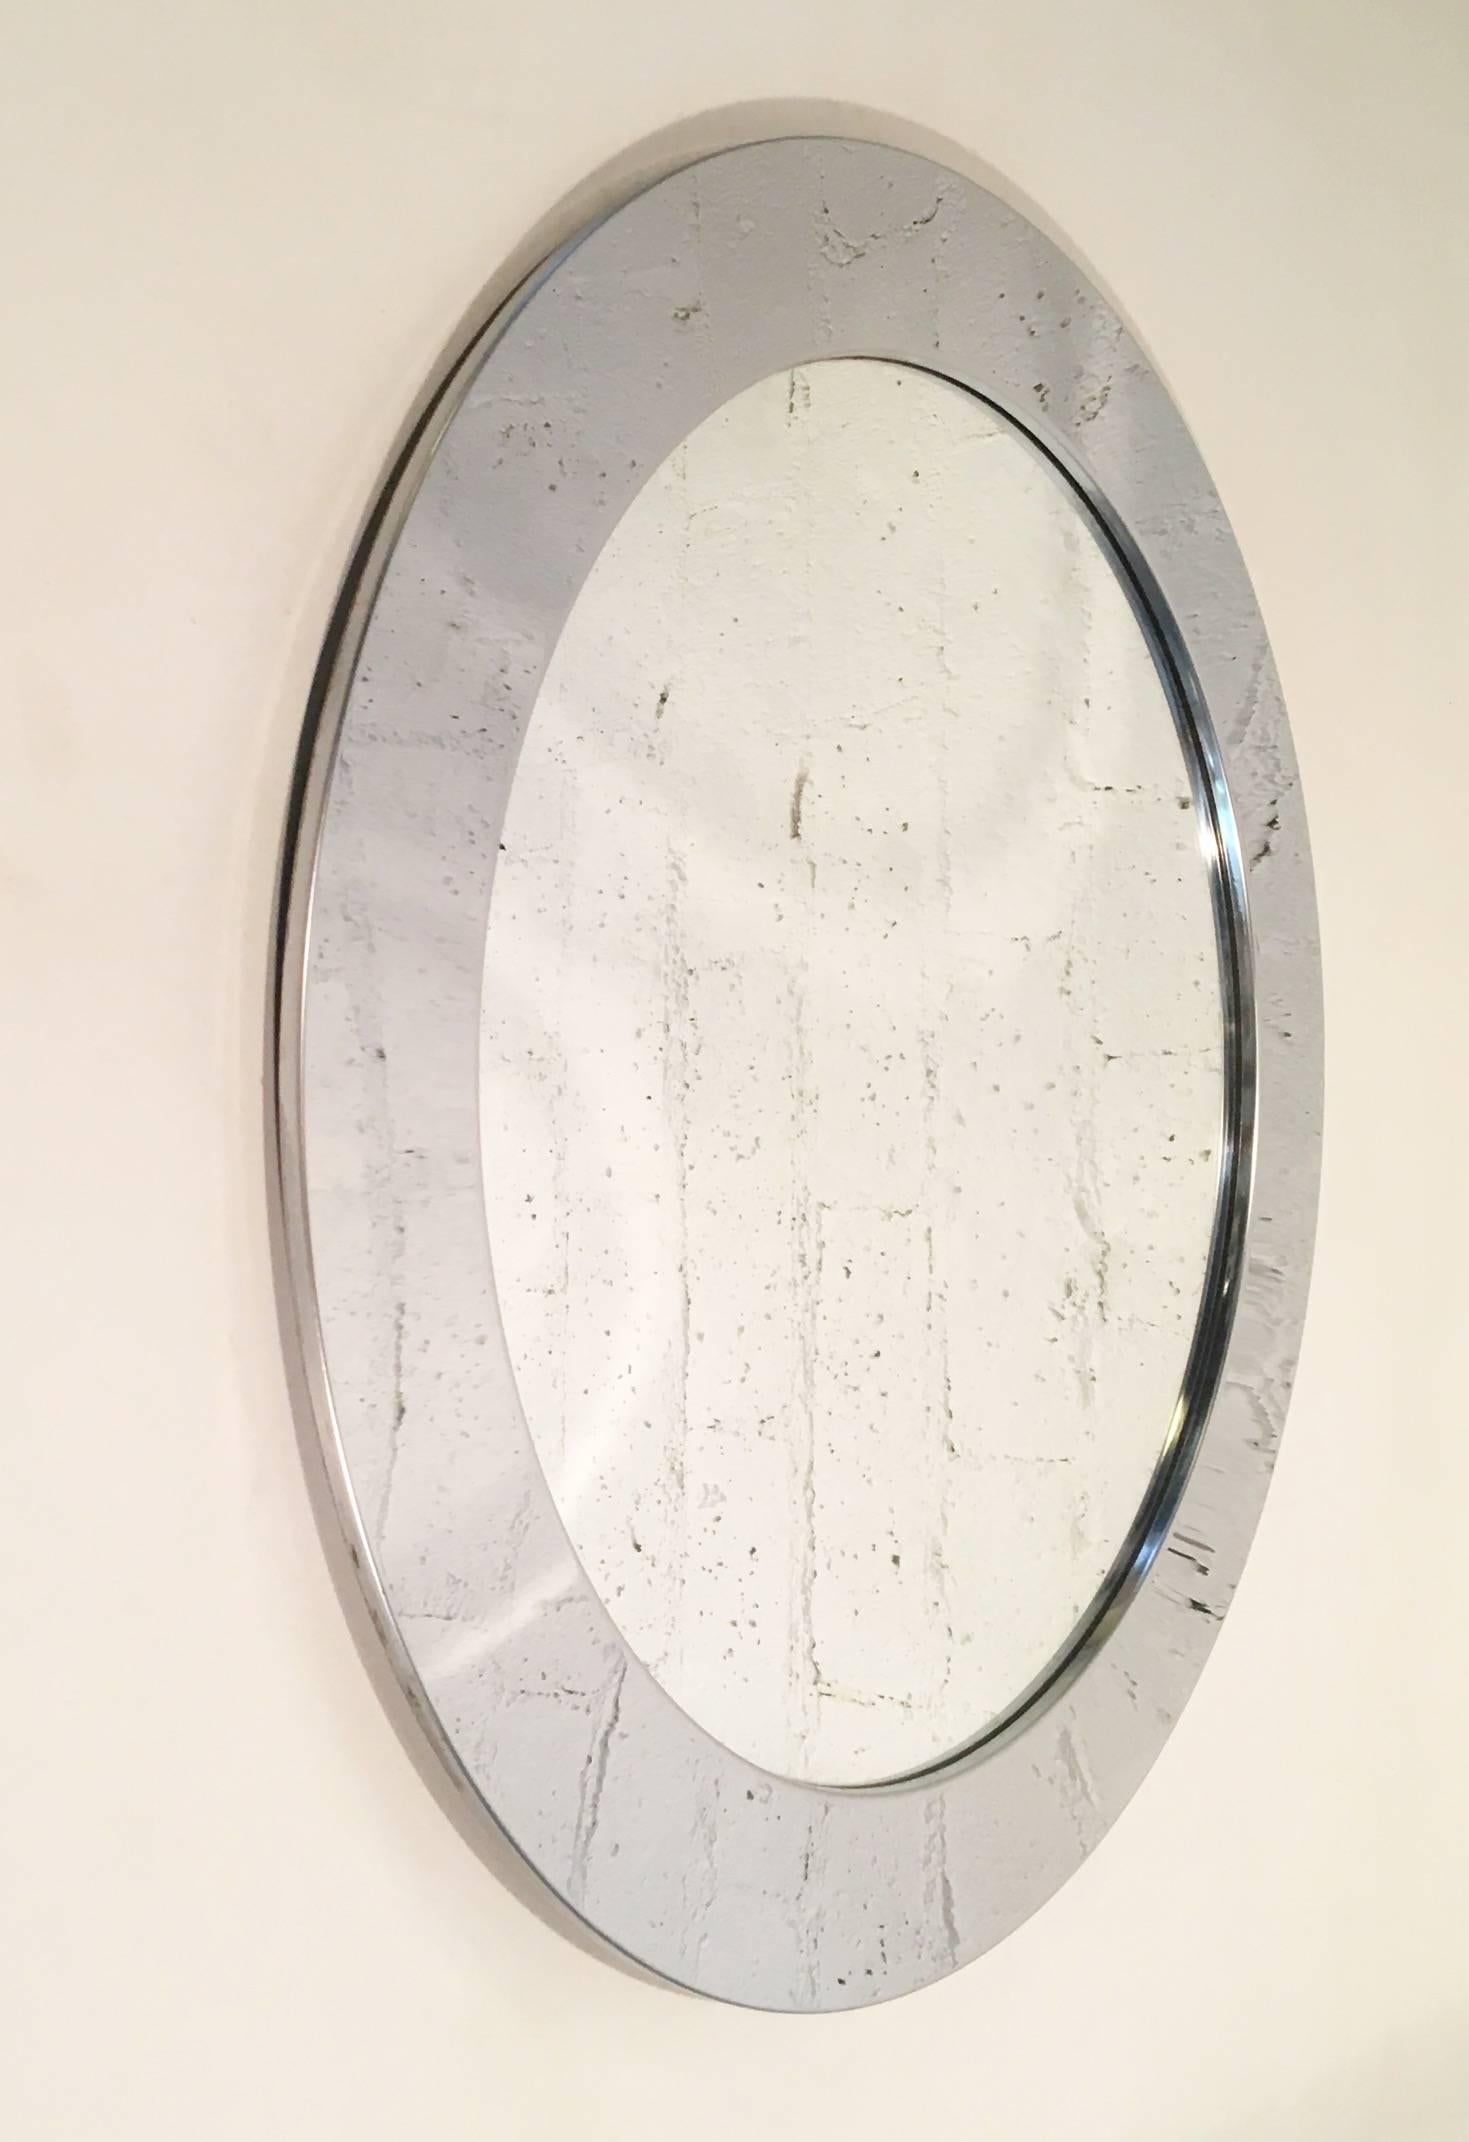 Ein runder Spiegel aus Chrom, entworfen von Curtis Jeré für Artisan House in den 1970er Jahren.
Es ist nicht signiert, aber es behält die Artisan House Tag auf der Rückseite siehe Fotos.